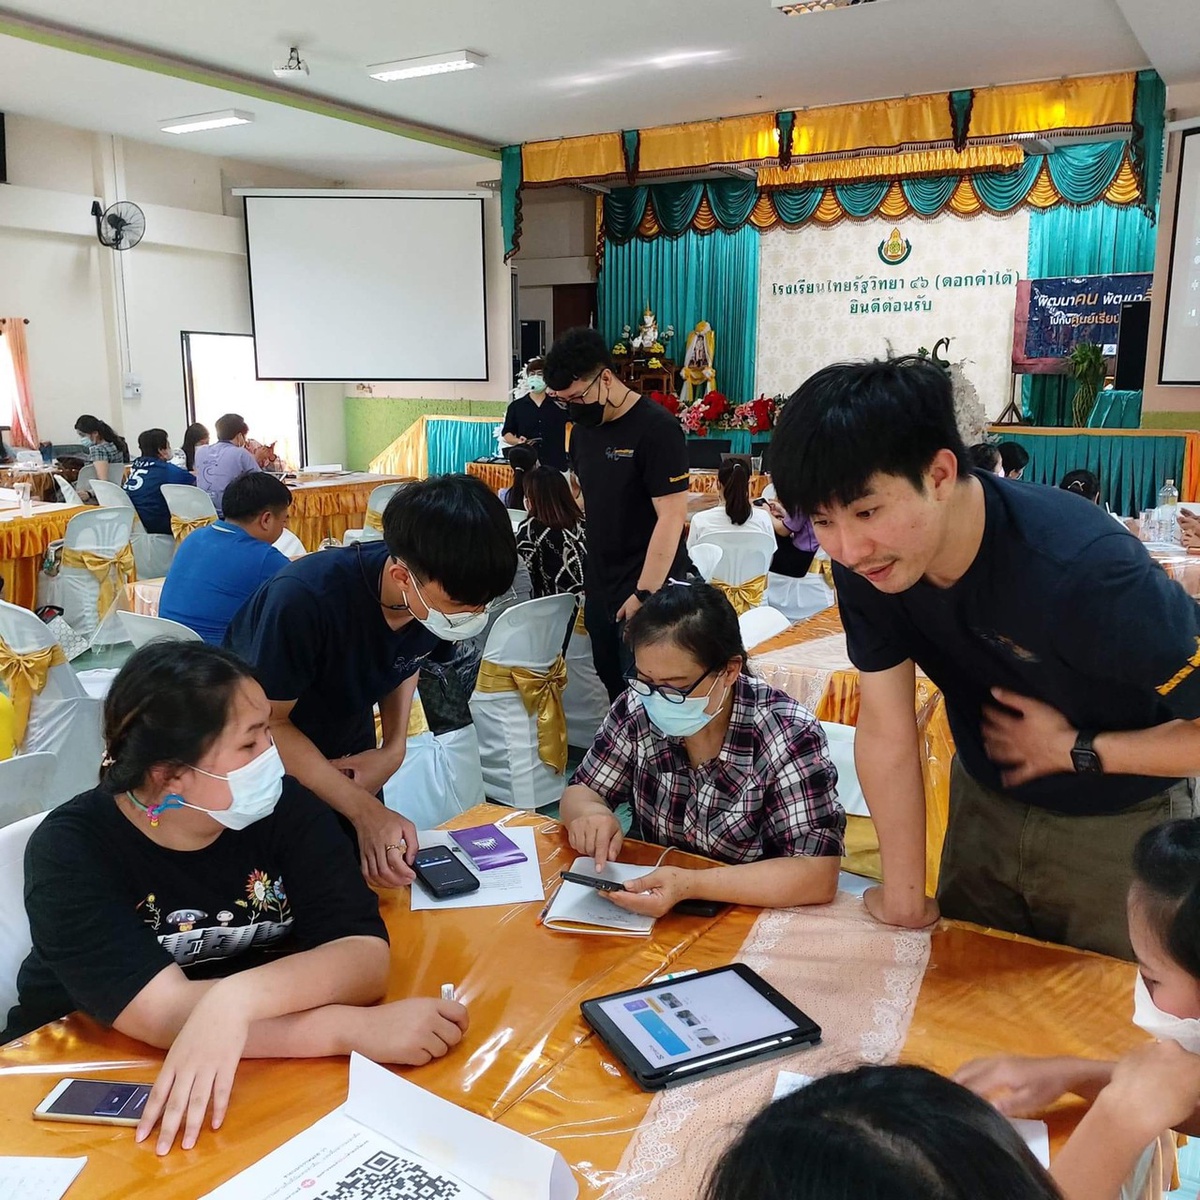 ศูนย์เรียนรู้สื่อชุมชน ม.พะเยา ร่วมกับ สถานีโทรทัศน์ ThaiPBS จัดอบรมกระบวนการเรียนรู้การเป็นนักข่าวพลเมือง